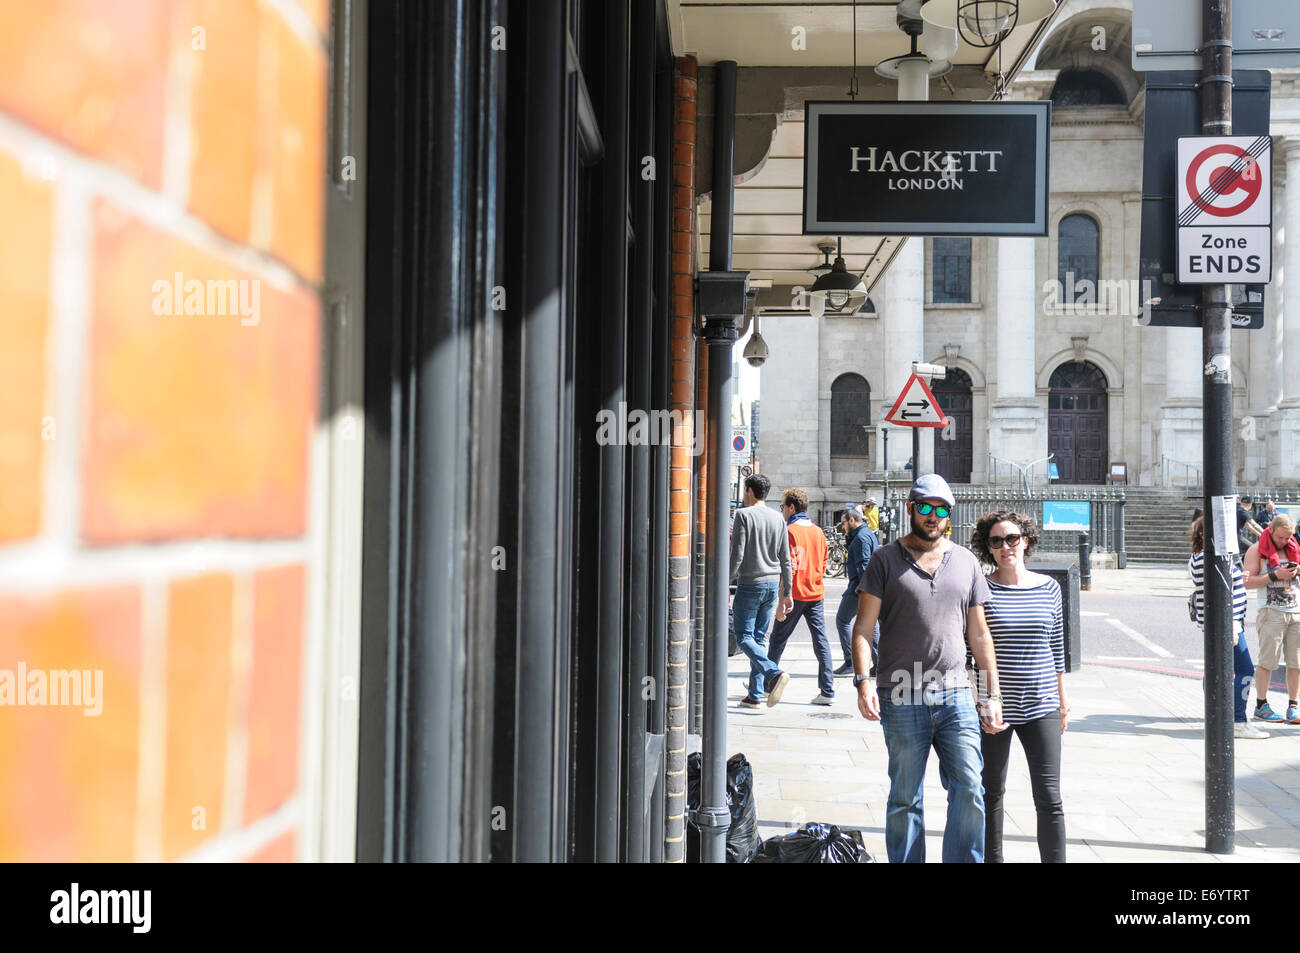 View of Hackett shop in Spitafields, London, UK Stock Photo